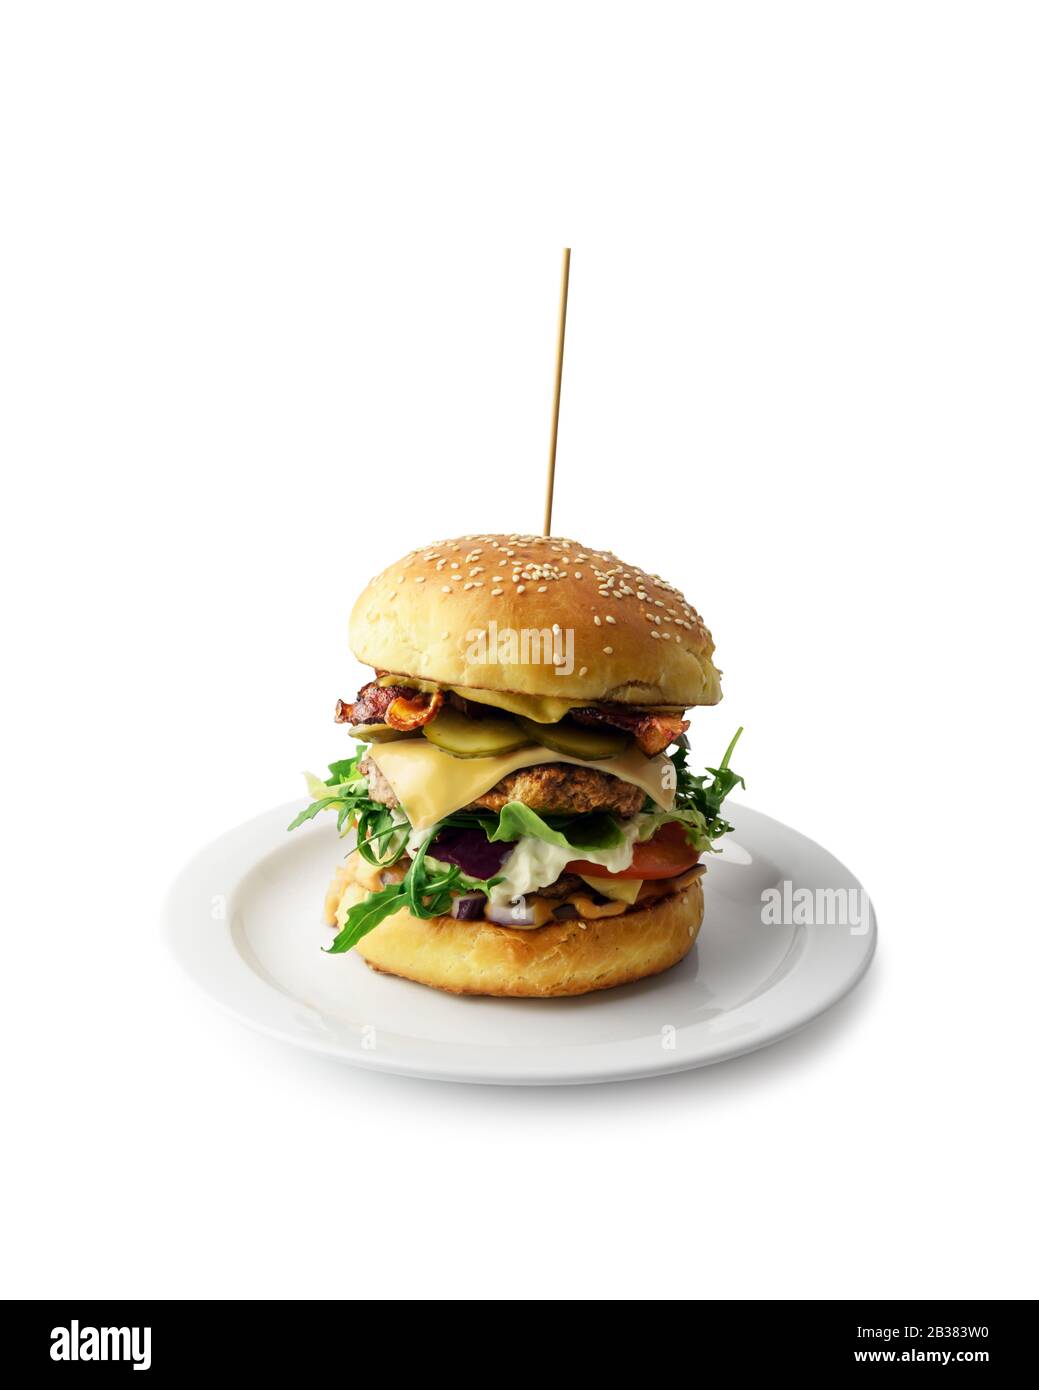 Appetitoso cheeseburger su piatto isolato su bianco. Fotografia di cibo Foto Stock